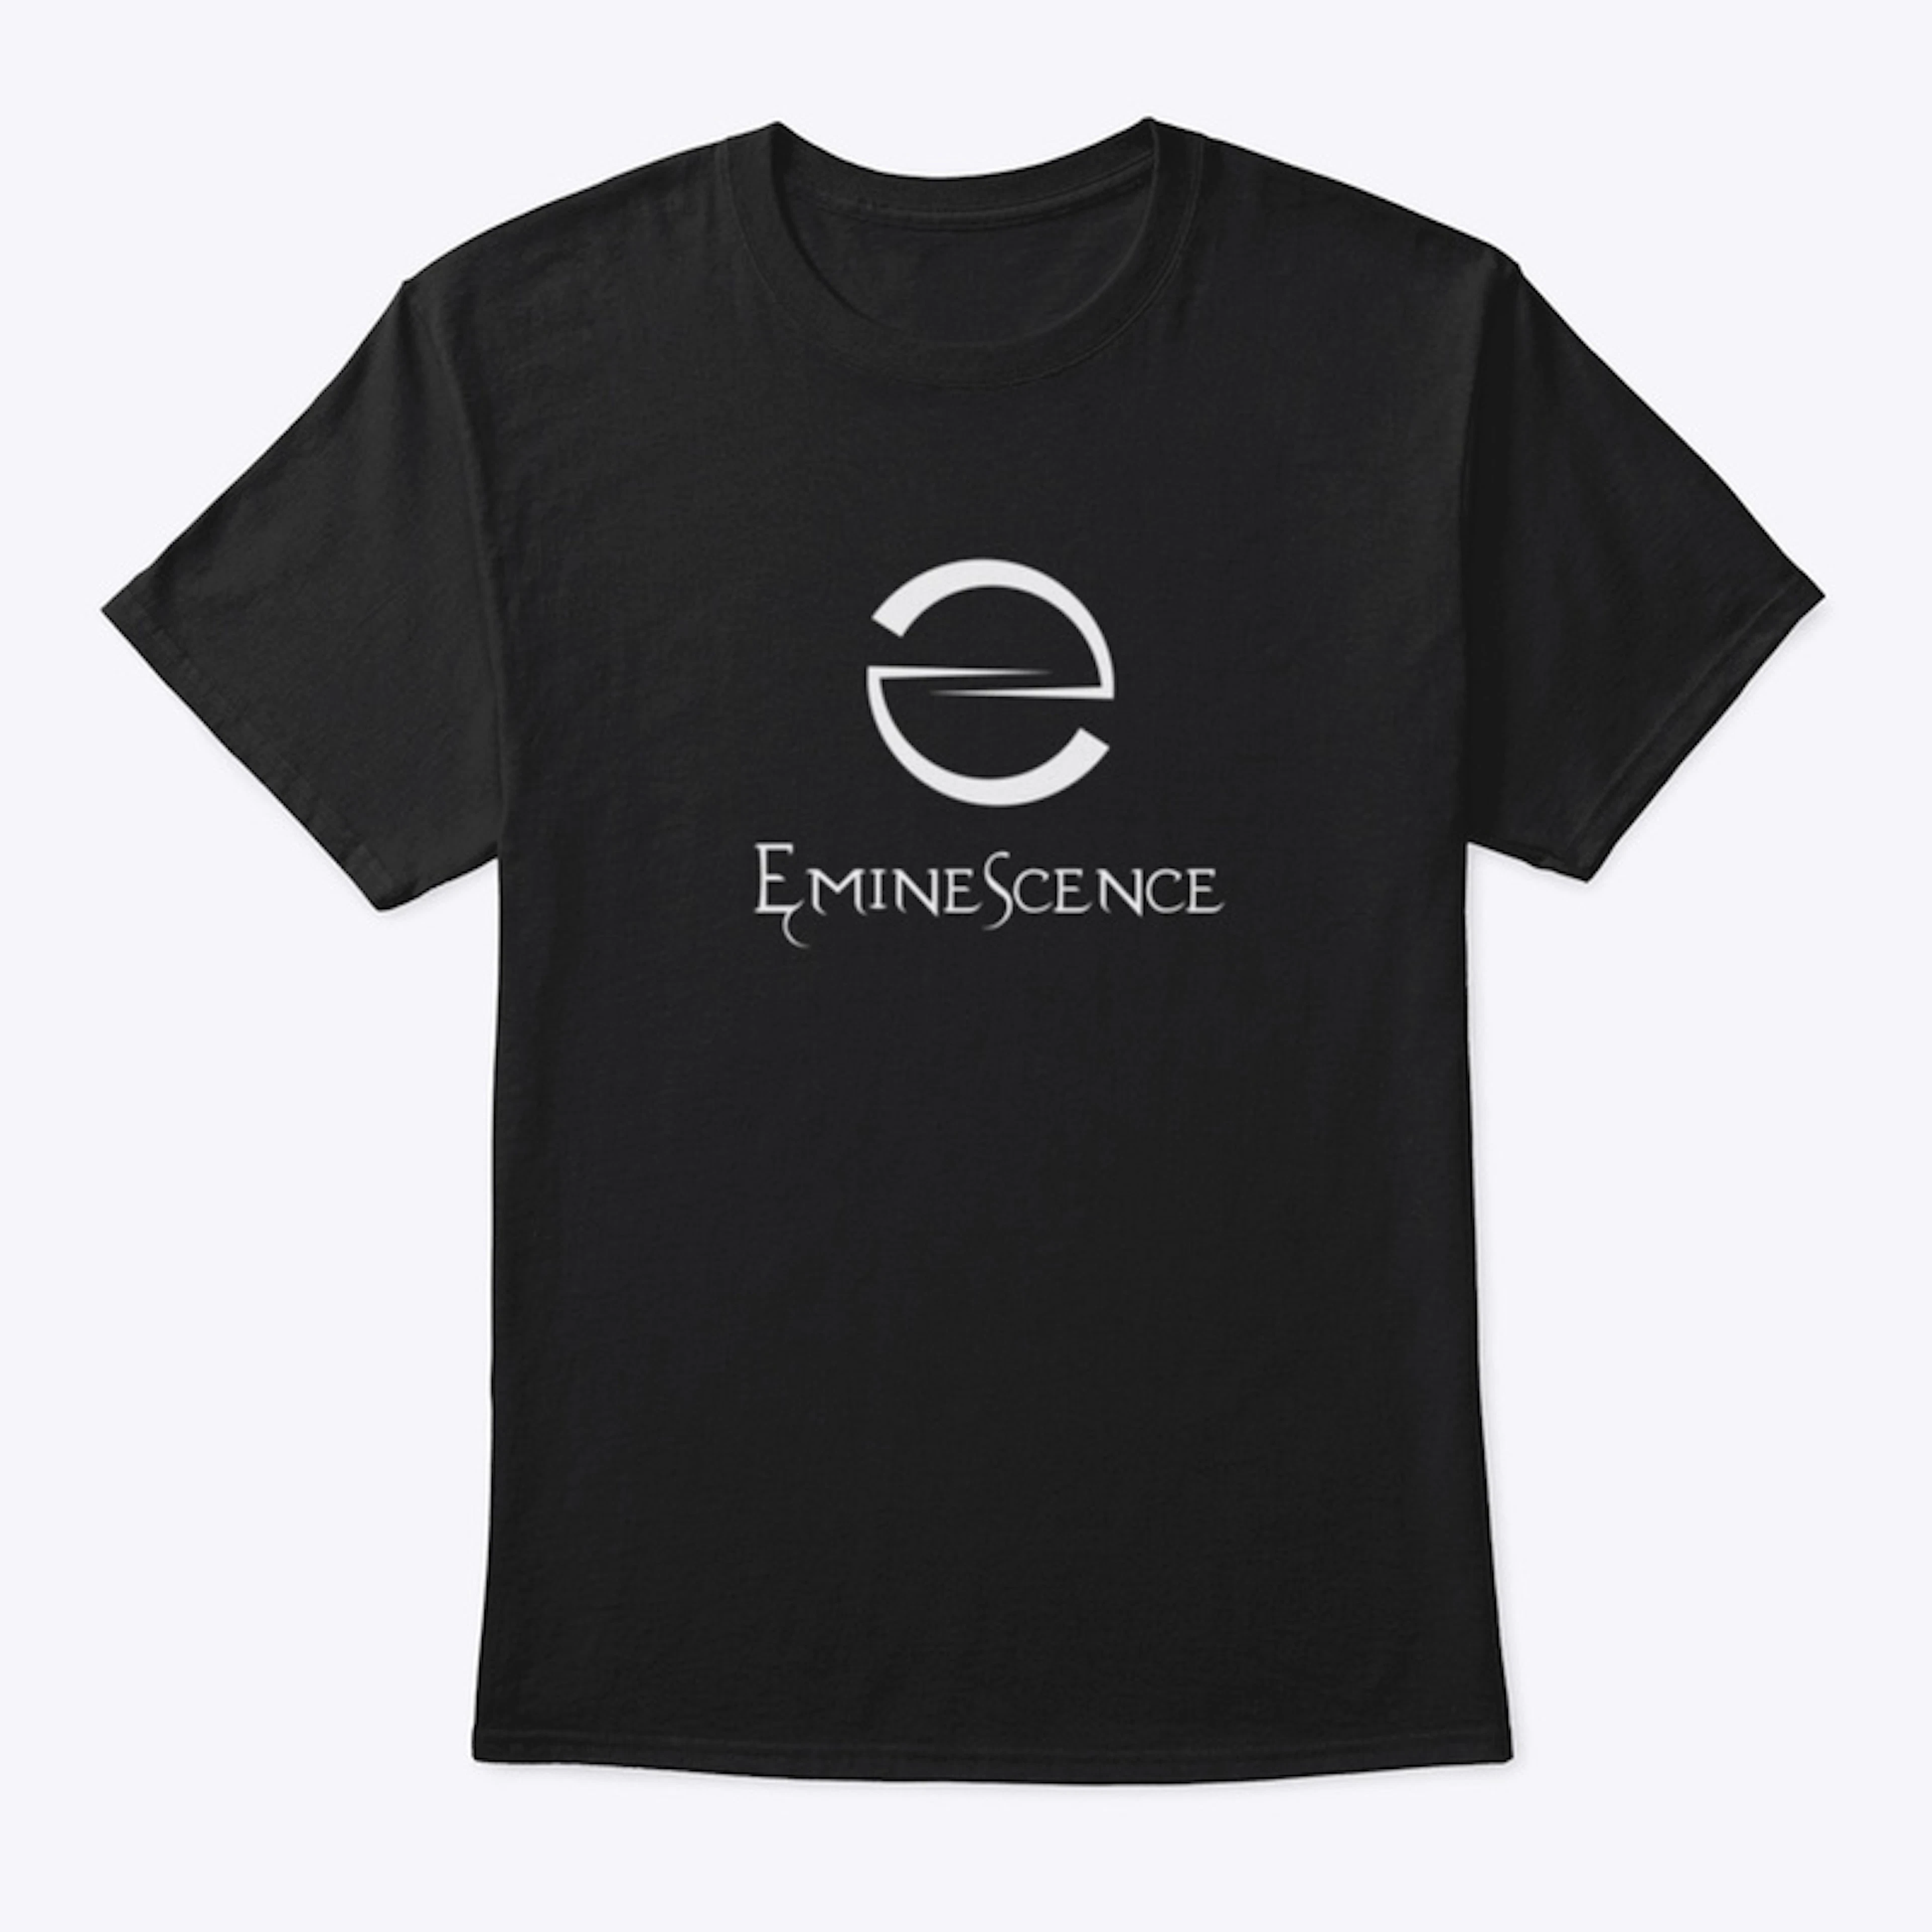 "Eminescence" logo